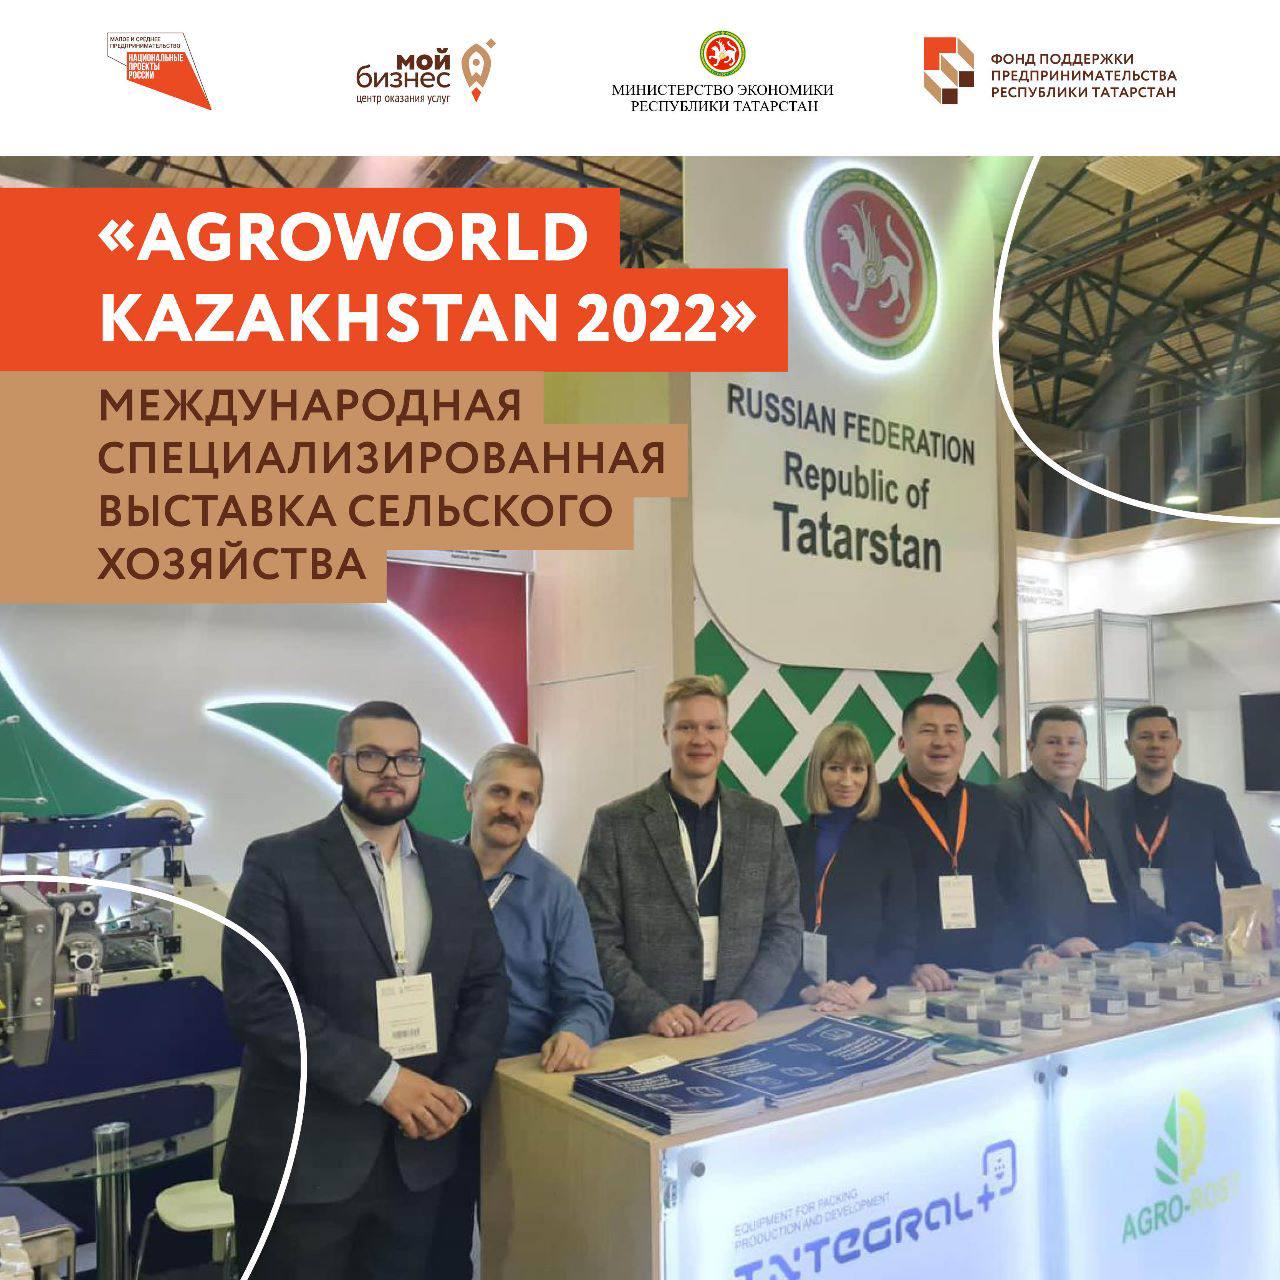 Предприниматели Татарстана в Казахстане на международной специализированной выставке сельского хозяйства «AgroWorld Kazakhstan 2022».